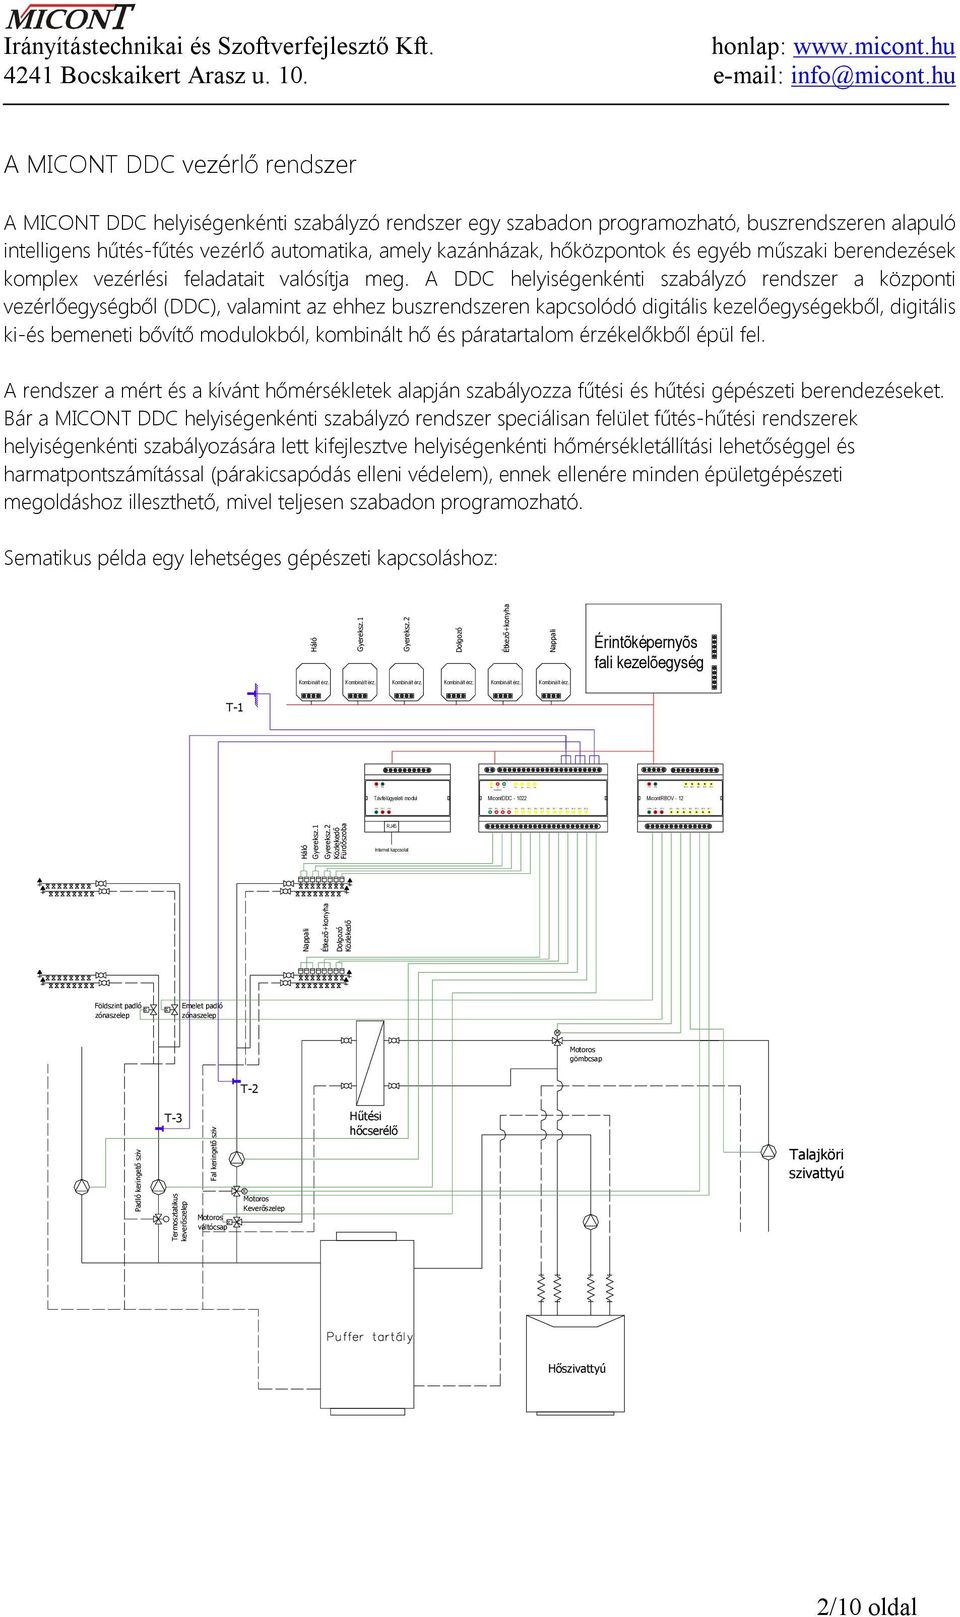 A MICONT DDC vezérlő rendszer A MICONT DDC helyiségenkénti szabályzó rendszer egy szabadon programozható, buszrendszeren alapuló intelligens hűtés-fűtés vezérlő automatika, amely kazánházak,